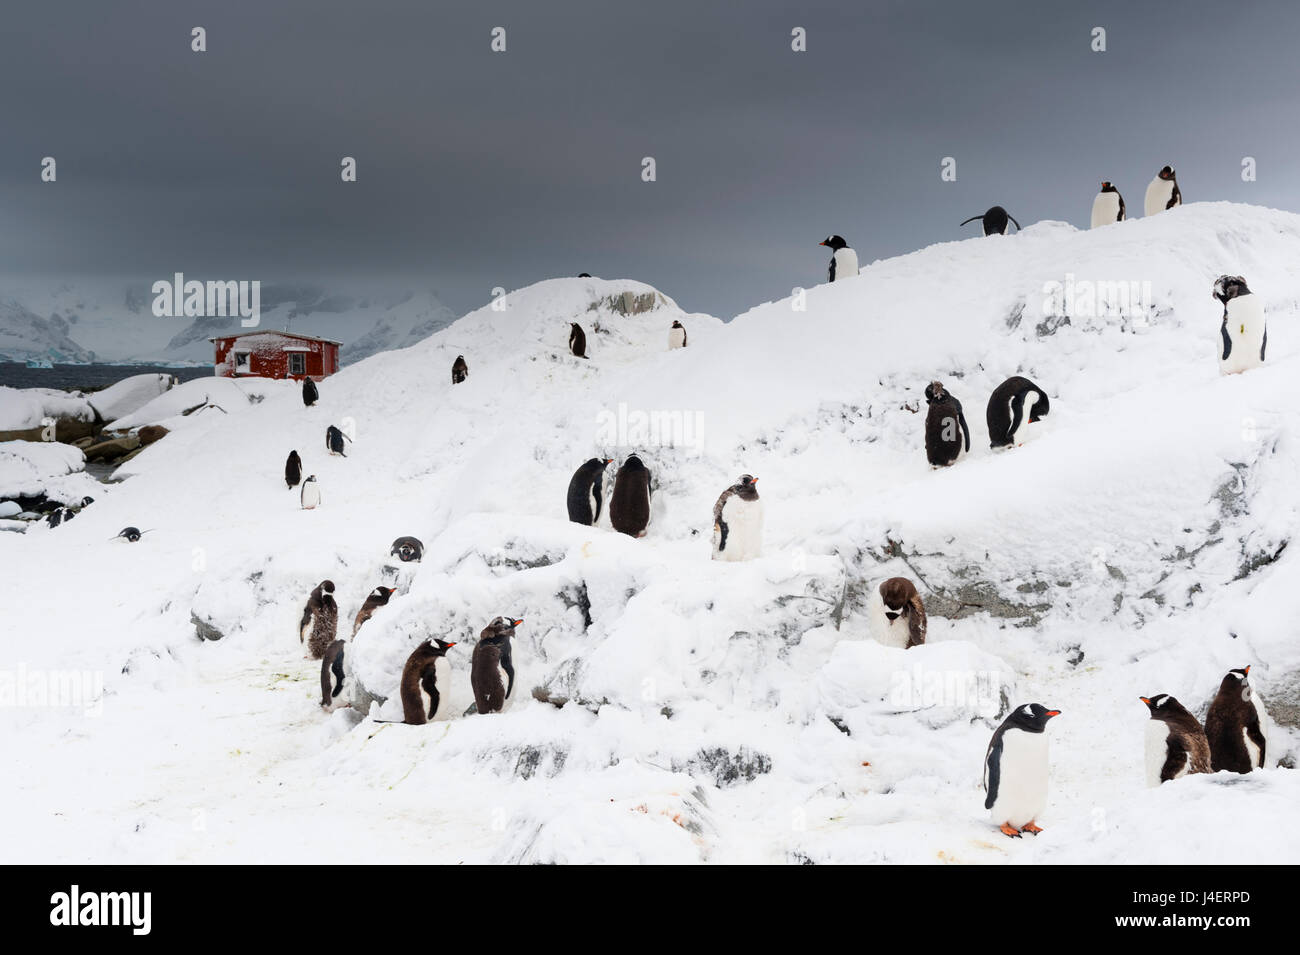 Une colonie de pingouins Gentoo (Pygoscelis papua) près de Groussac hut argentin, l'Île Petermann, Antarctique, les régions polaires Banque D'Images